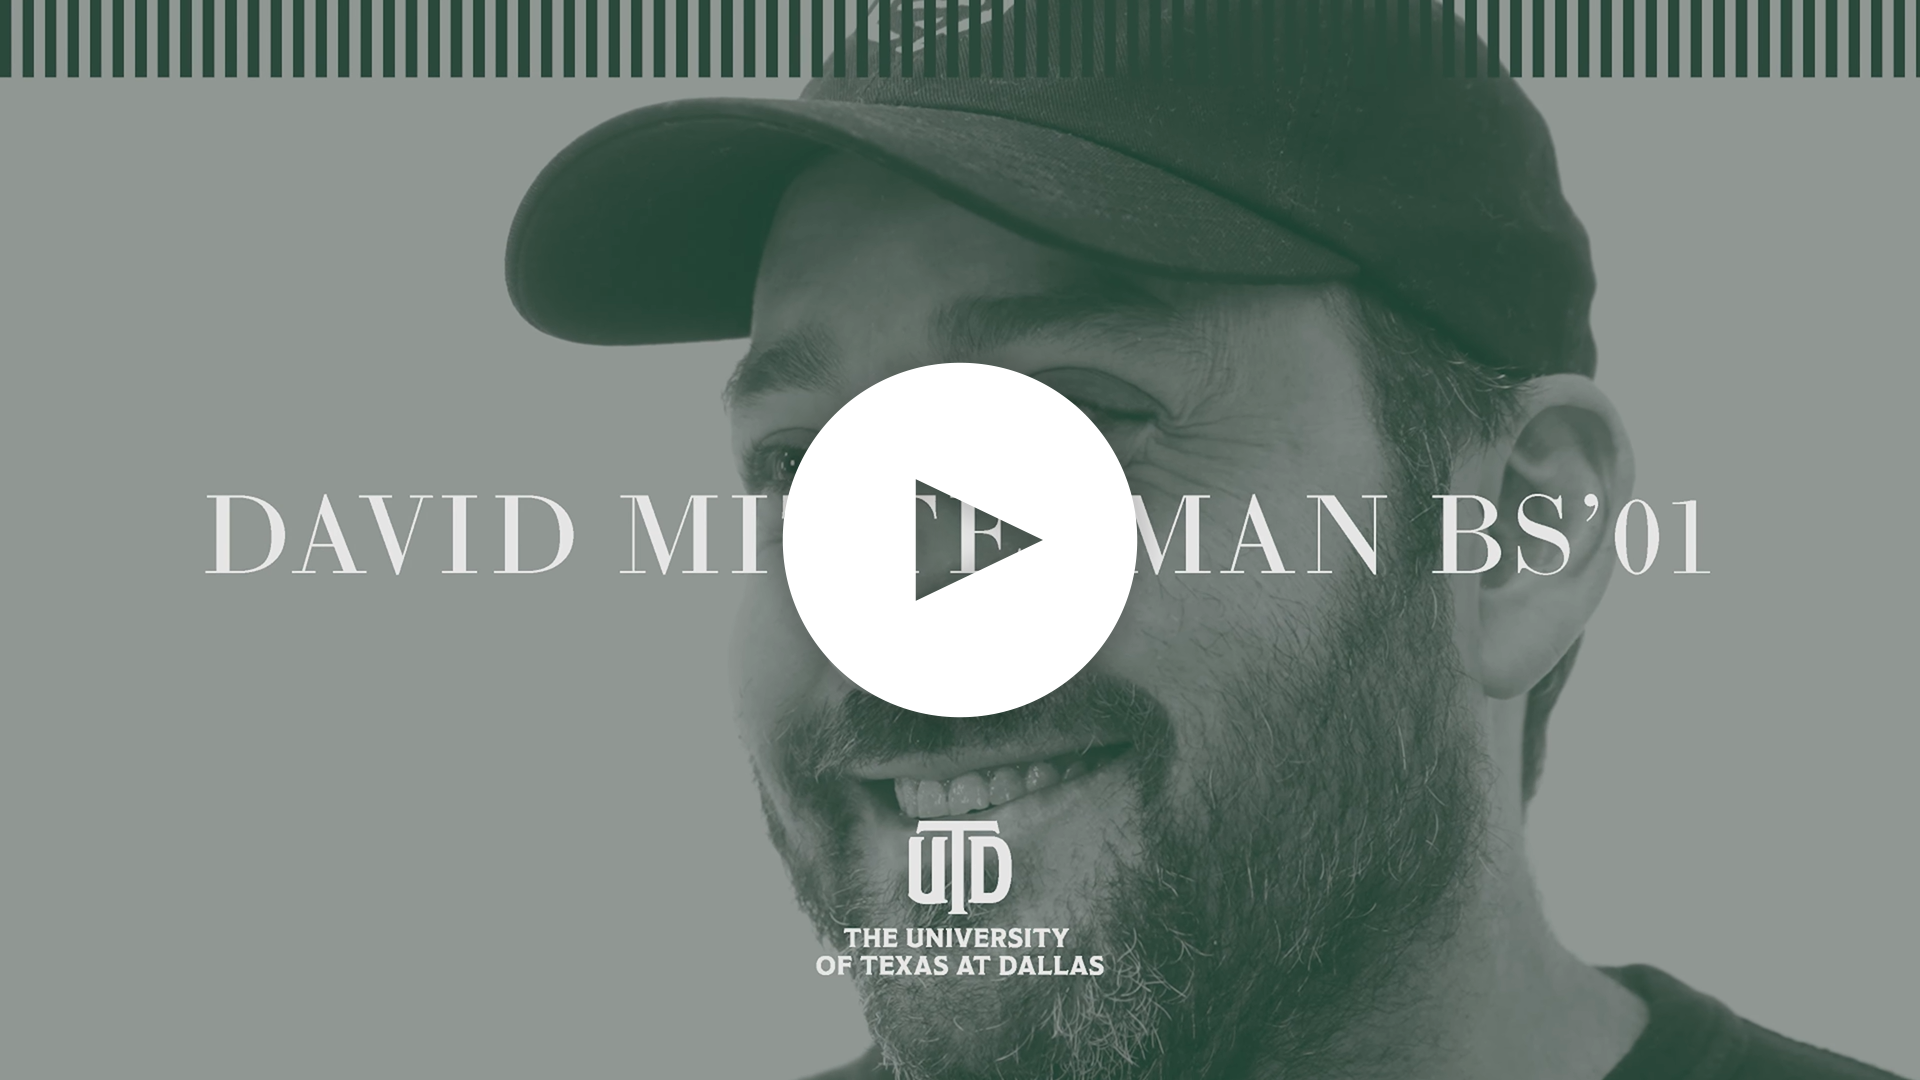 Watch David Mittelman's interview on YouTube